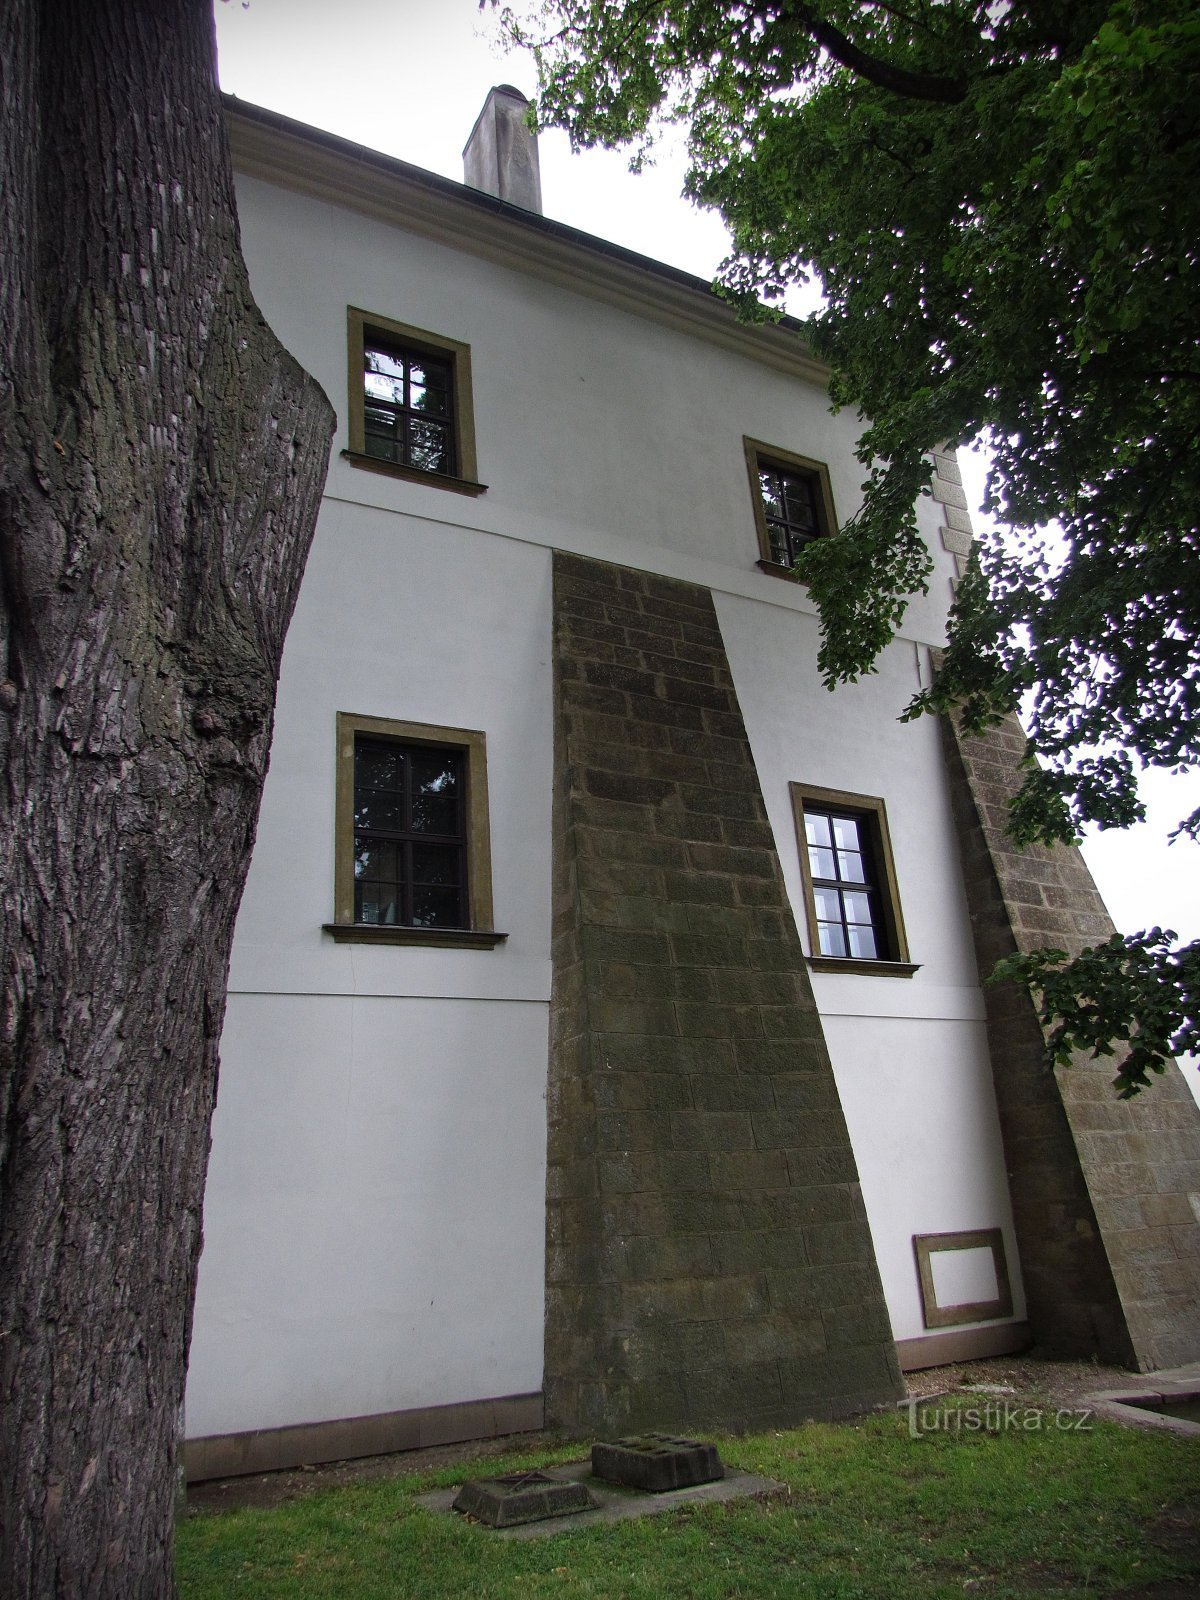 Οι εγκαταστάσεις του κάστρου στο Letohrad